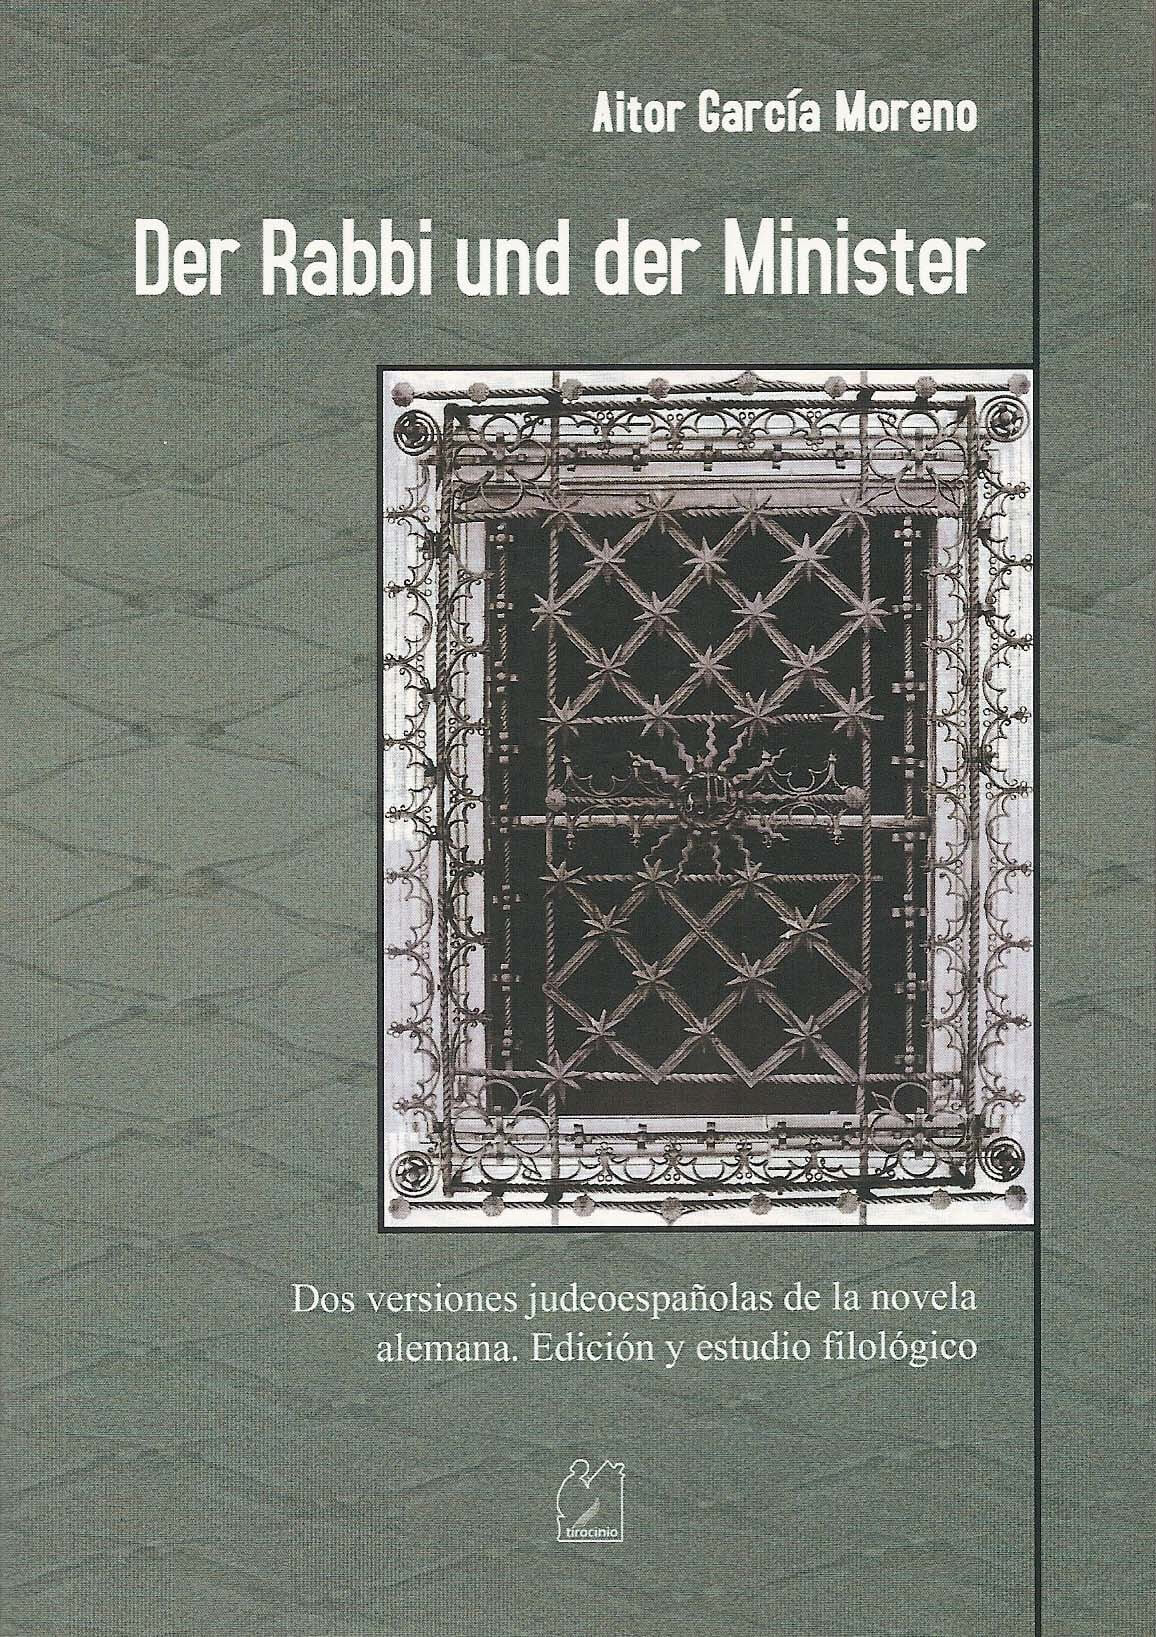 Der Rabbi und der Minister. Dos versiones judeoespañolas de la novela alemana